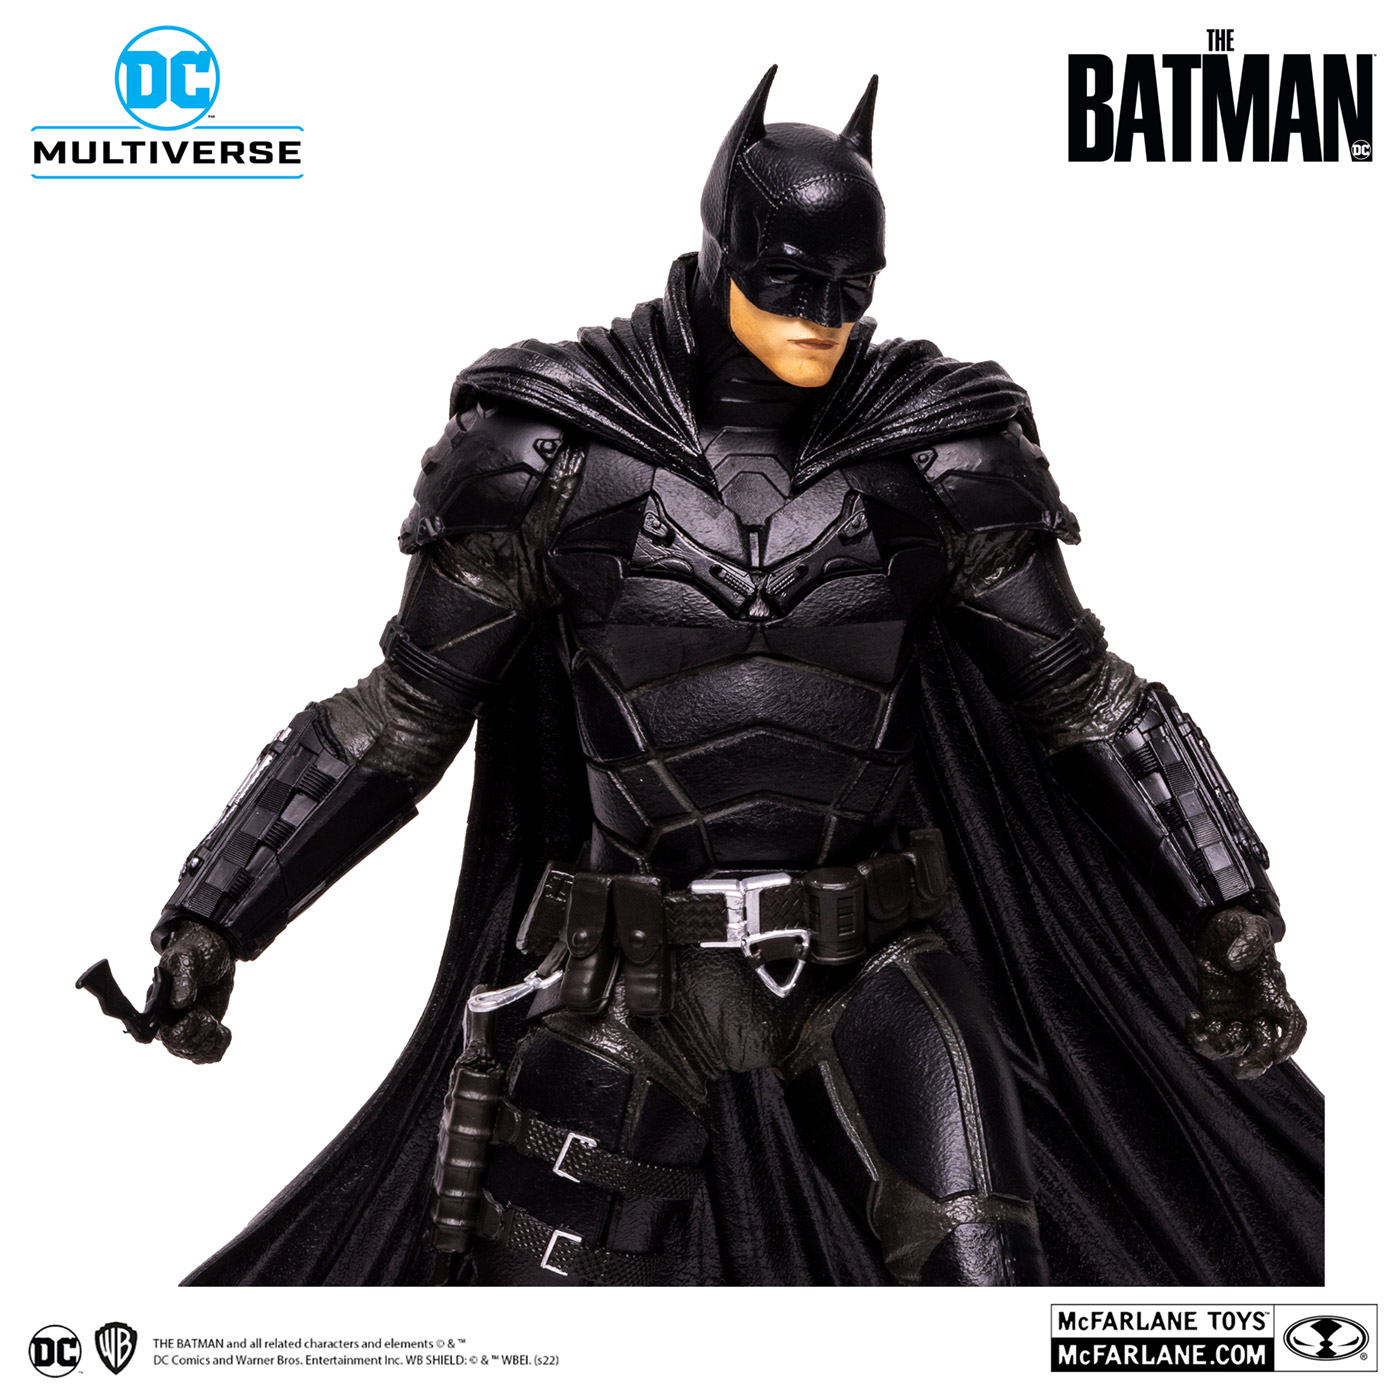 シネマーズ・ストア / DCマルチバース「THE BATMAN-ザ・バットマン」12 